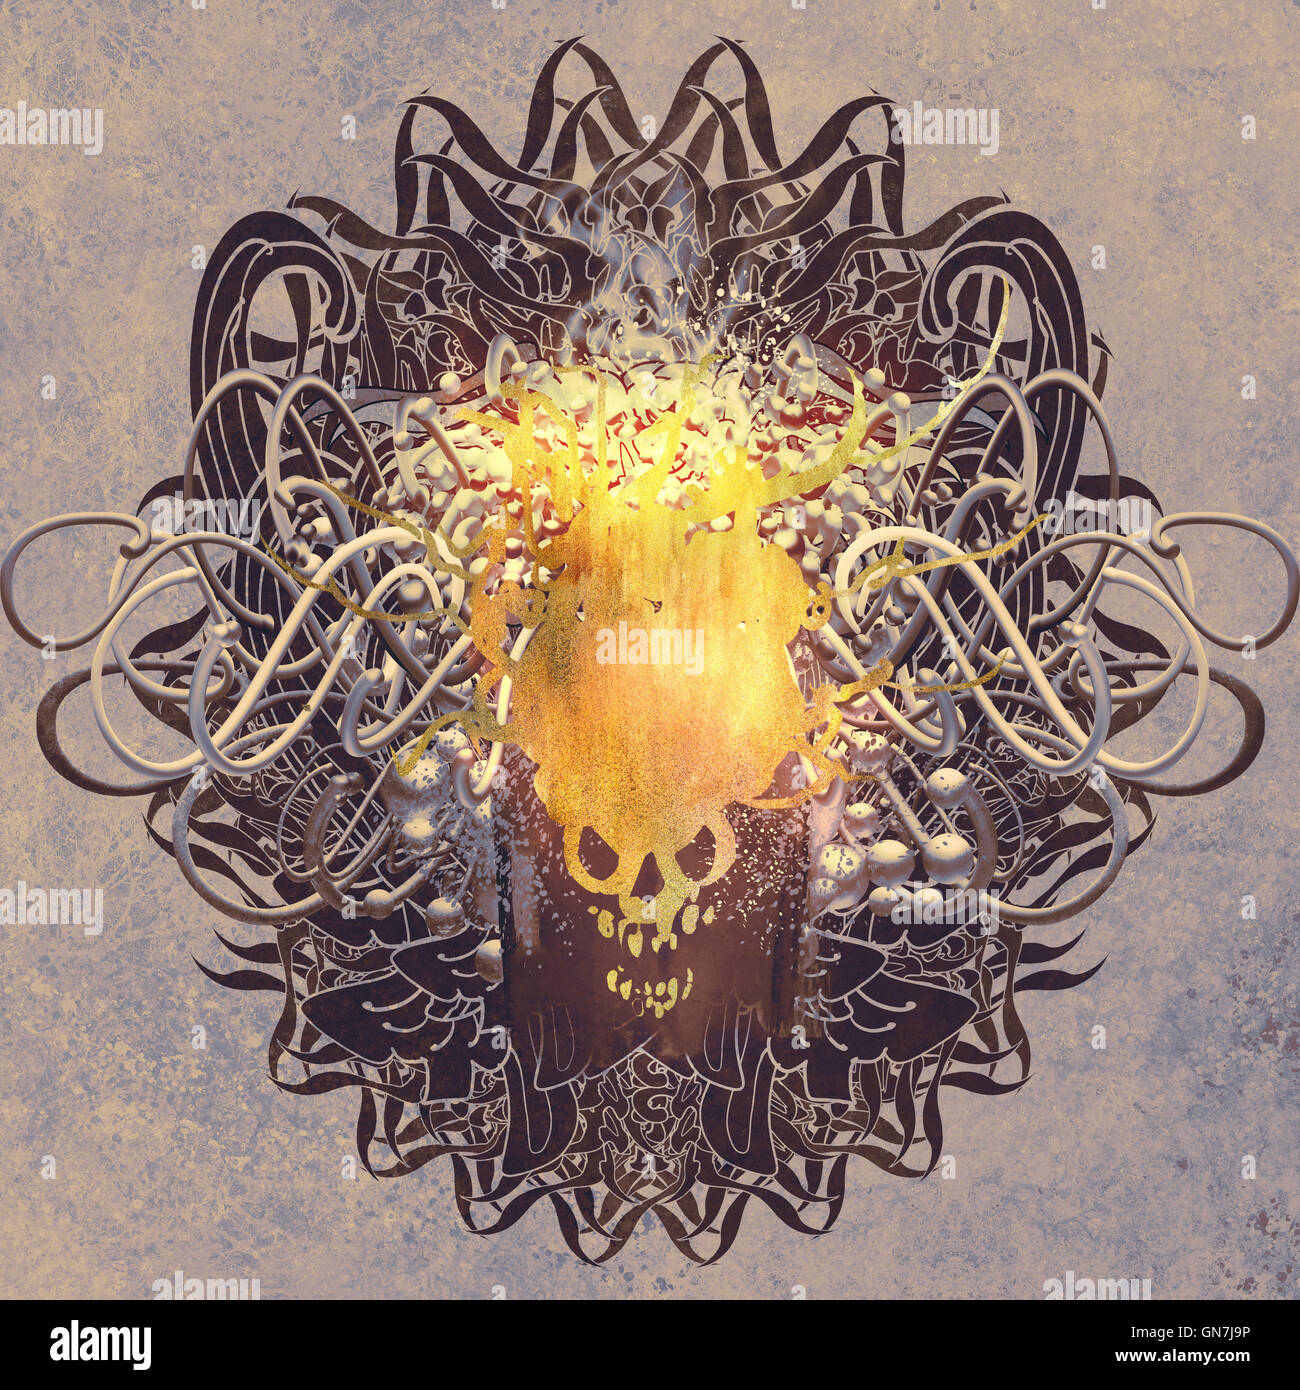 Fire skull sur fond graphique avec texture grunge,illustration art Banque D'Images